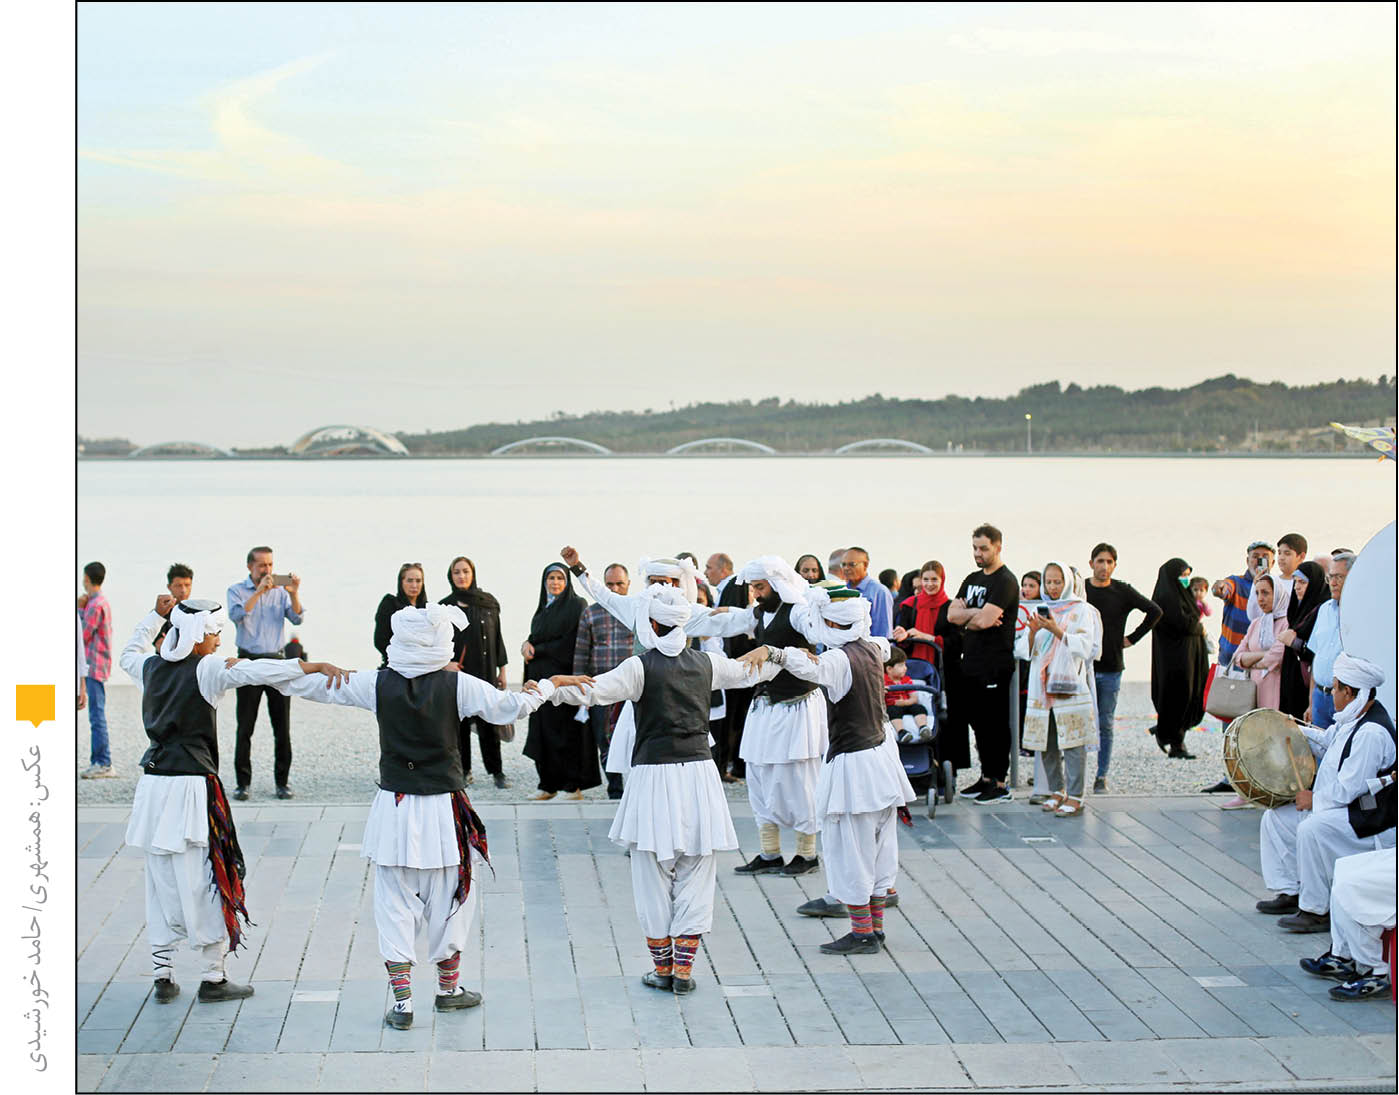 جشنواره وحدت اقوام ایرانی در حاشیه دریاچه شهدای خلیج‌فارس تا پایان هفته برپاست